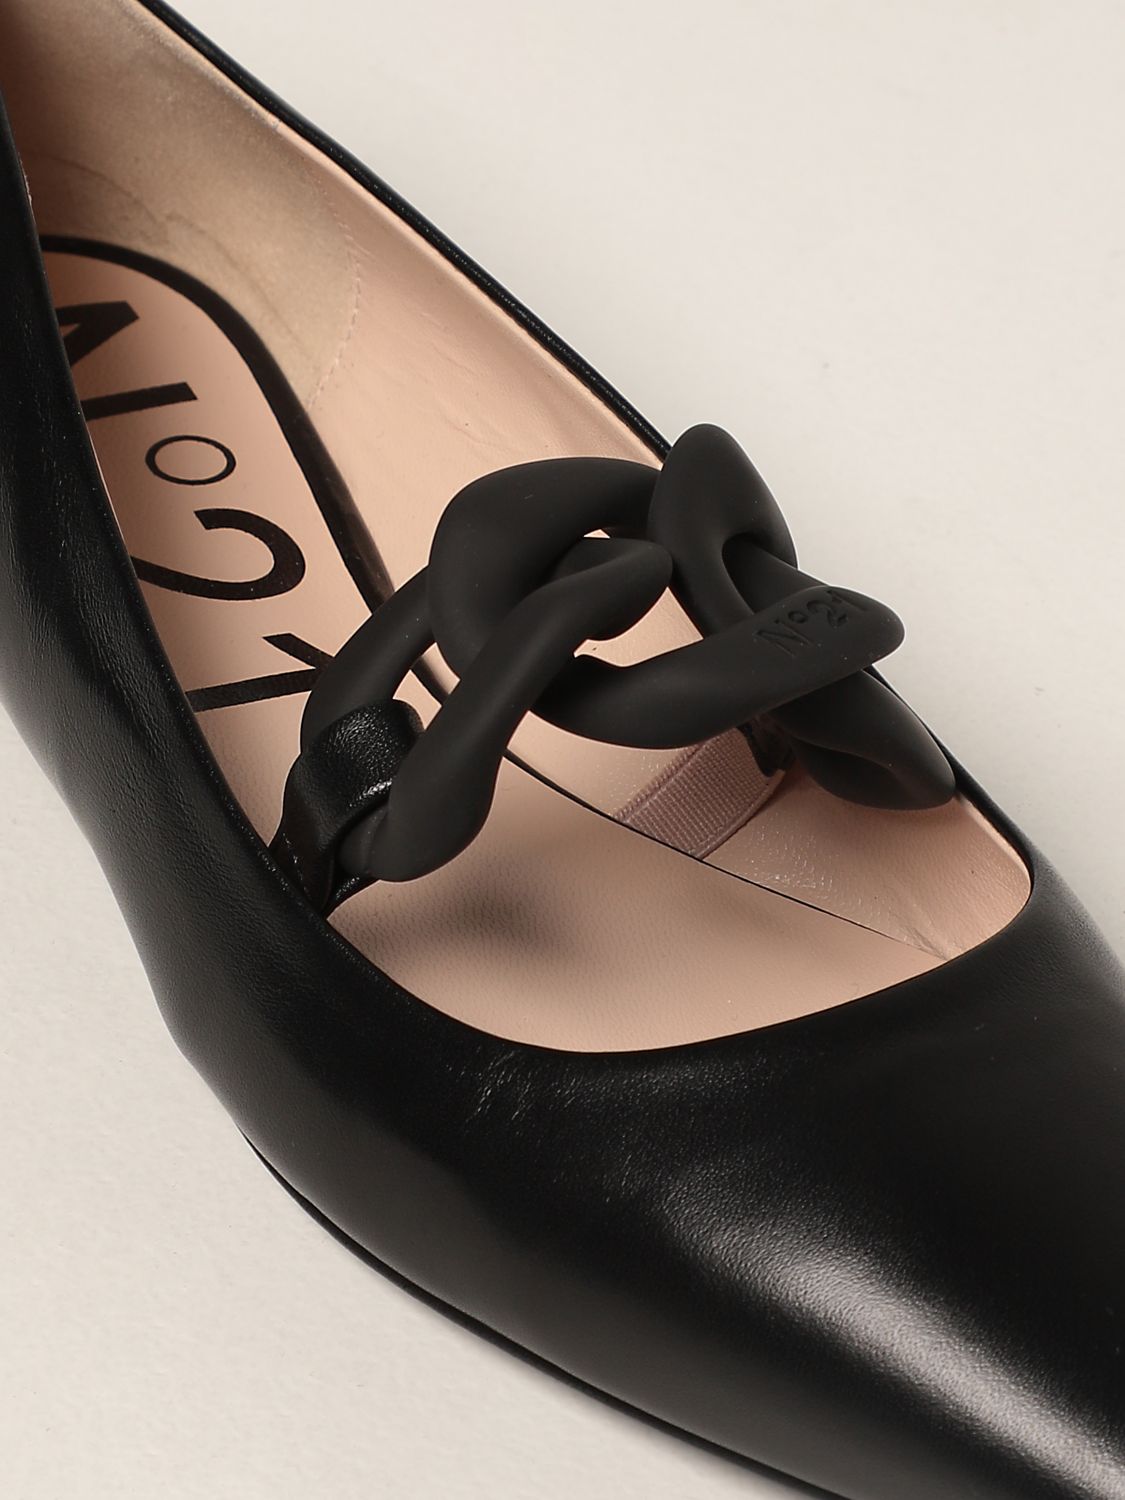 芭蕾平底鞋 N° 21: N ° 21 皮革芭蕾舞鞋 黑色 4